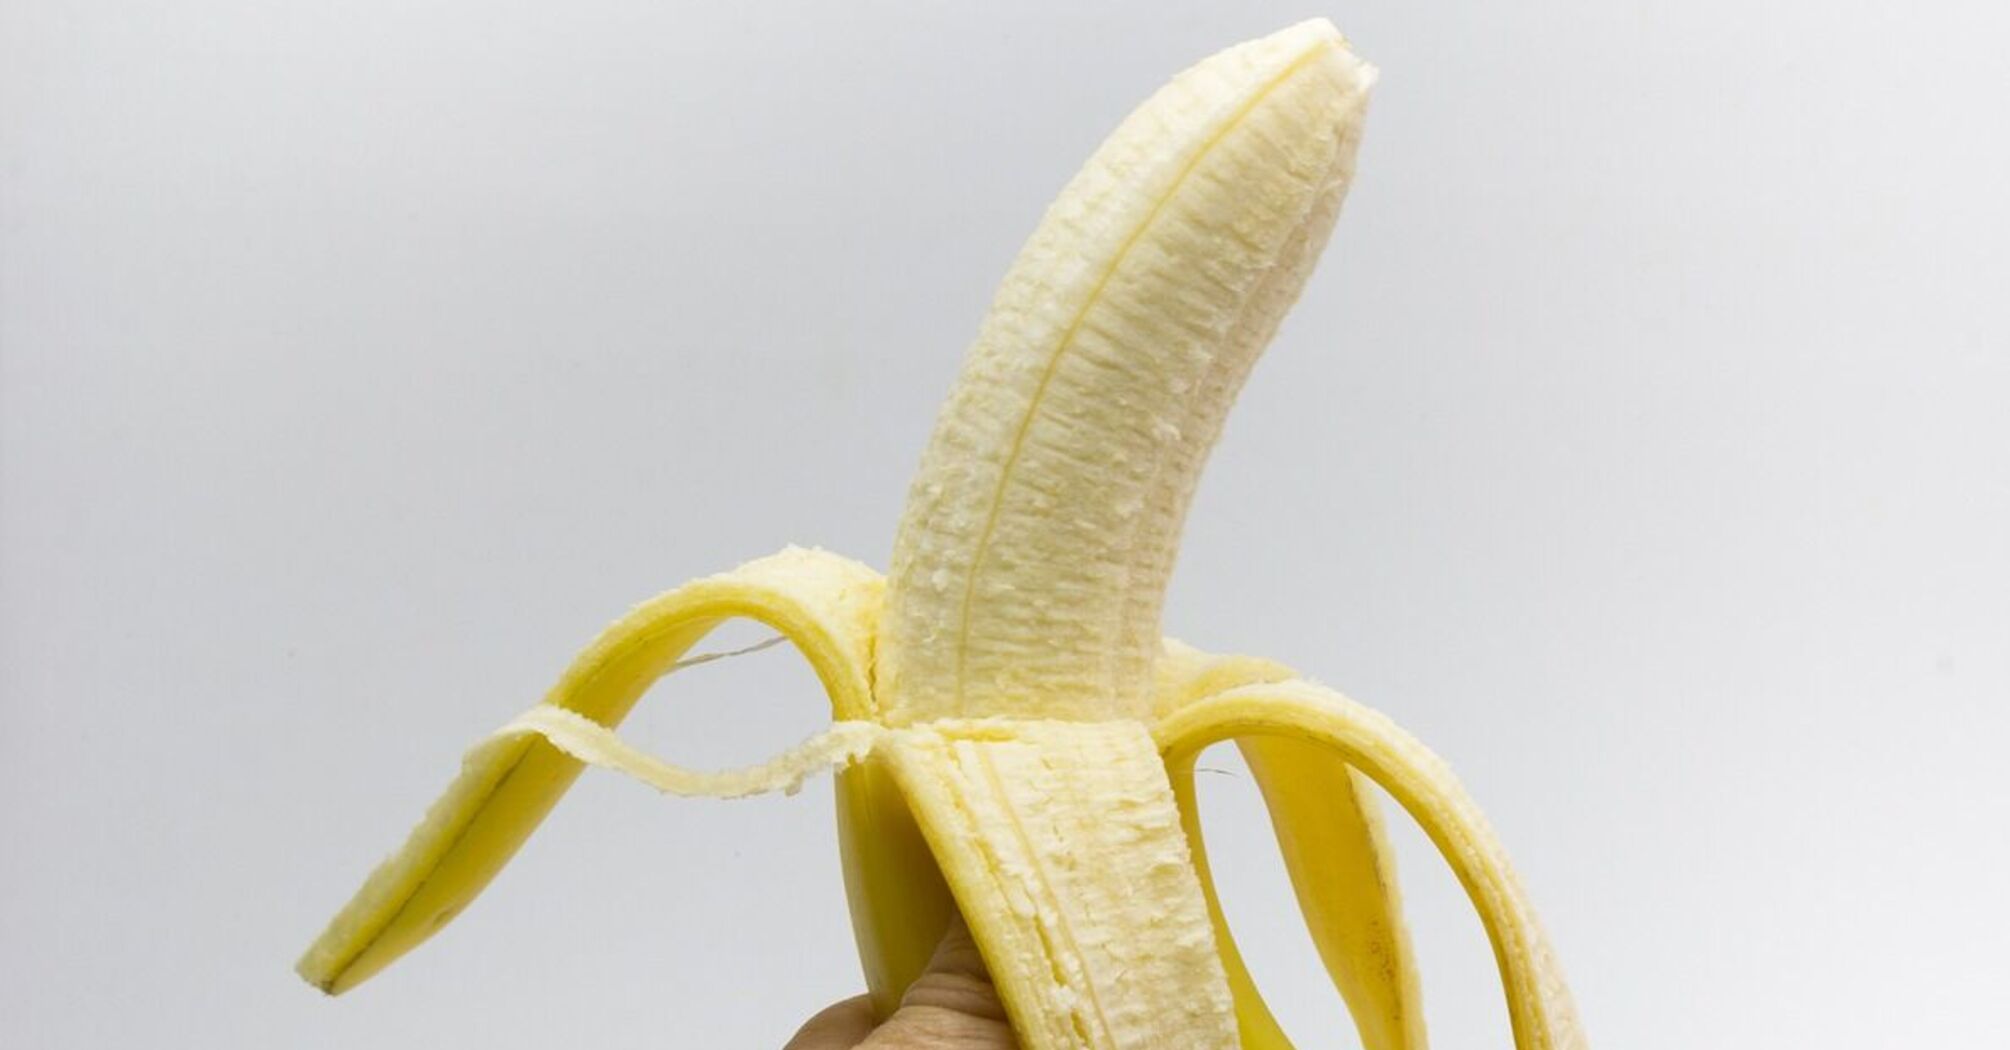 Щоденне споживання бананів може допомогти контролювати артеріальний тиск: дослідження вчених